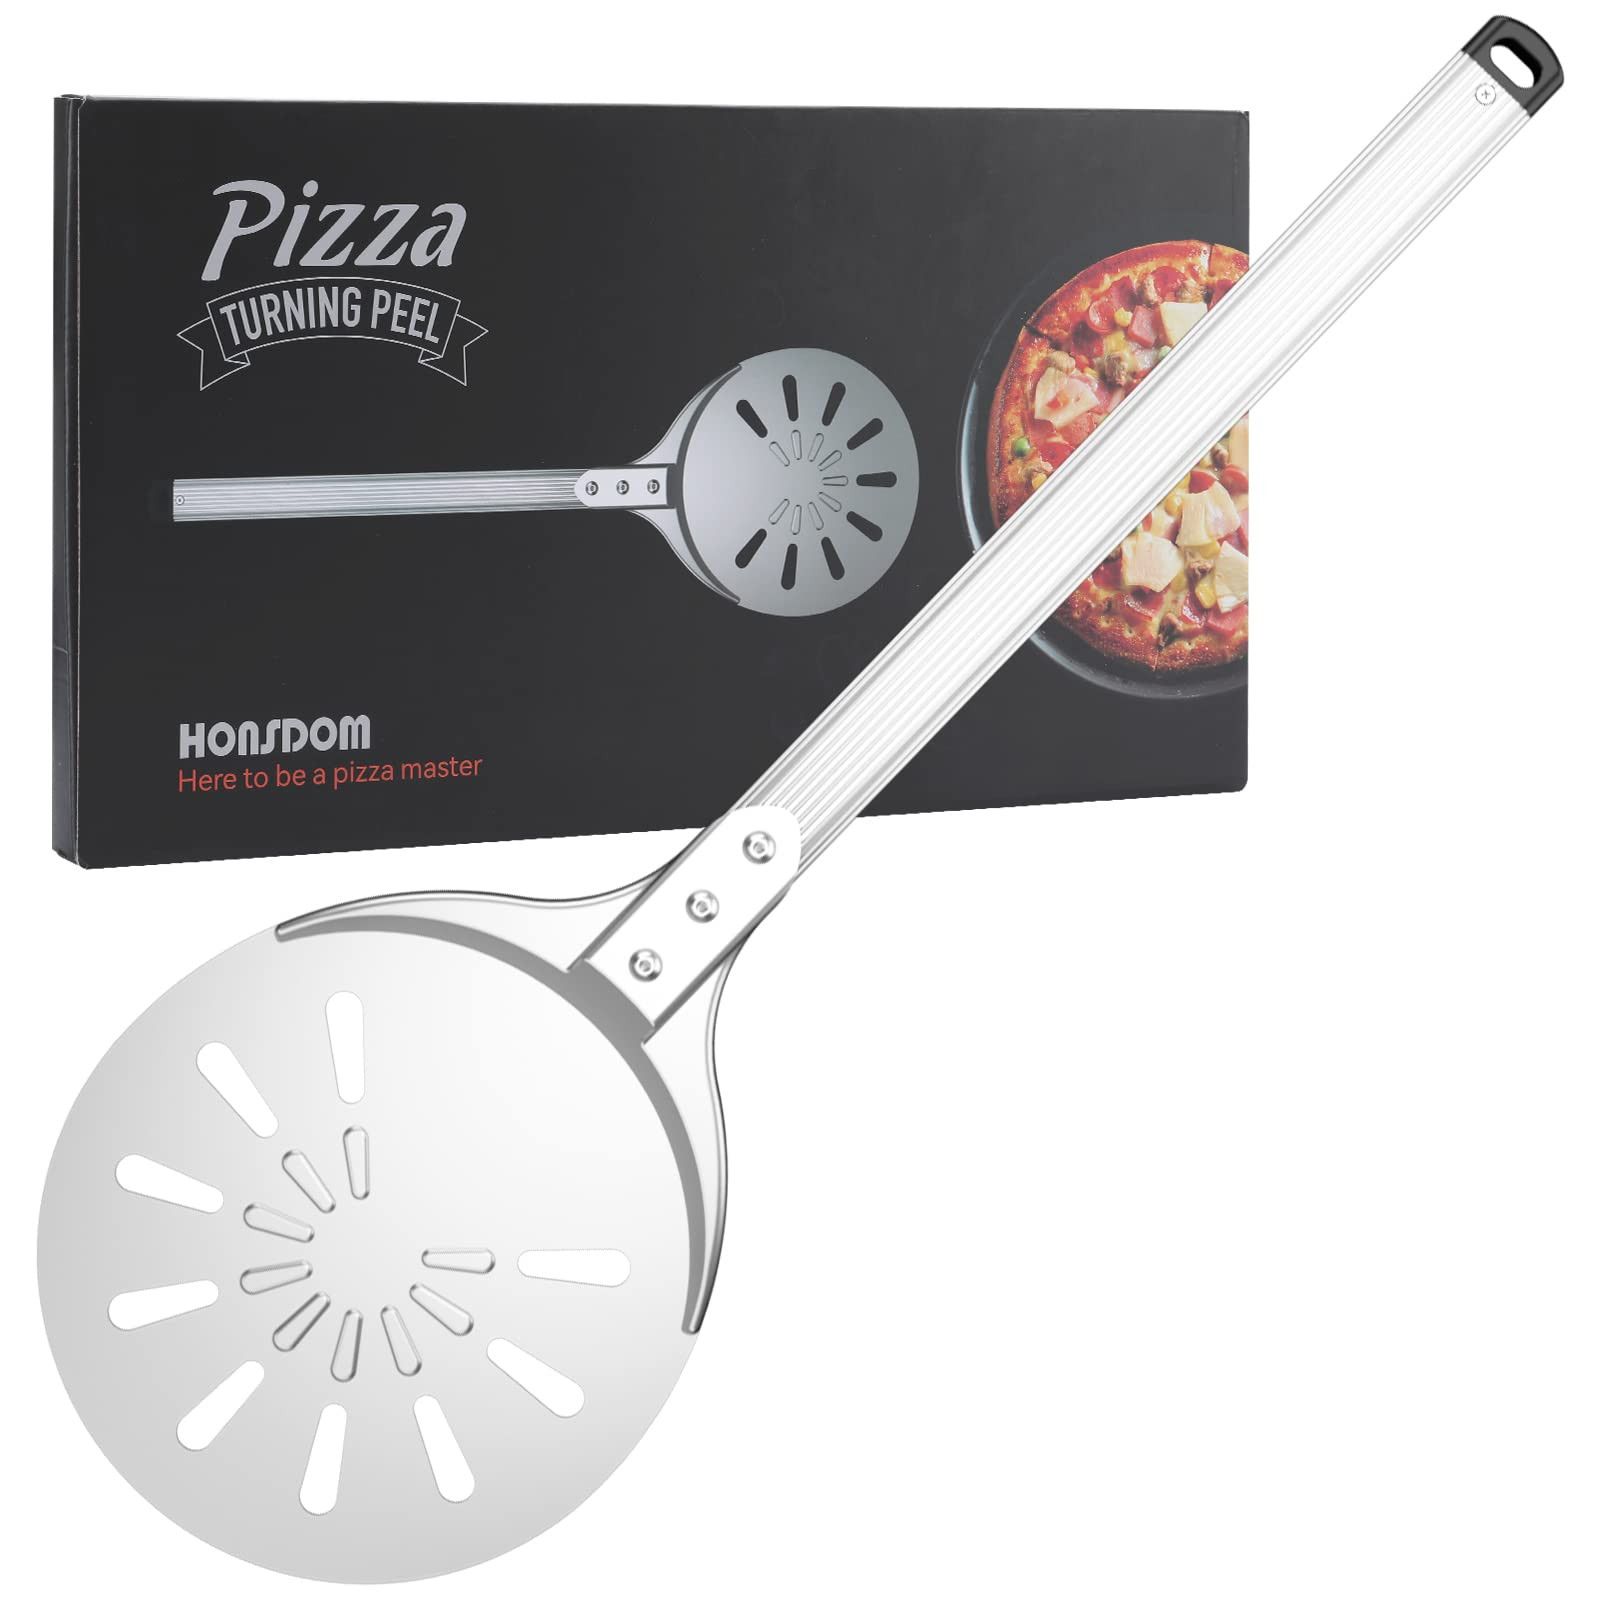 Honsdom Pizza Turning Peel, Round Pizza Turner, 8-Inch Hard Anodized Aluminum Perforated Pizza Pe... | Amazon (US)